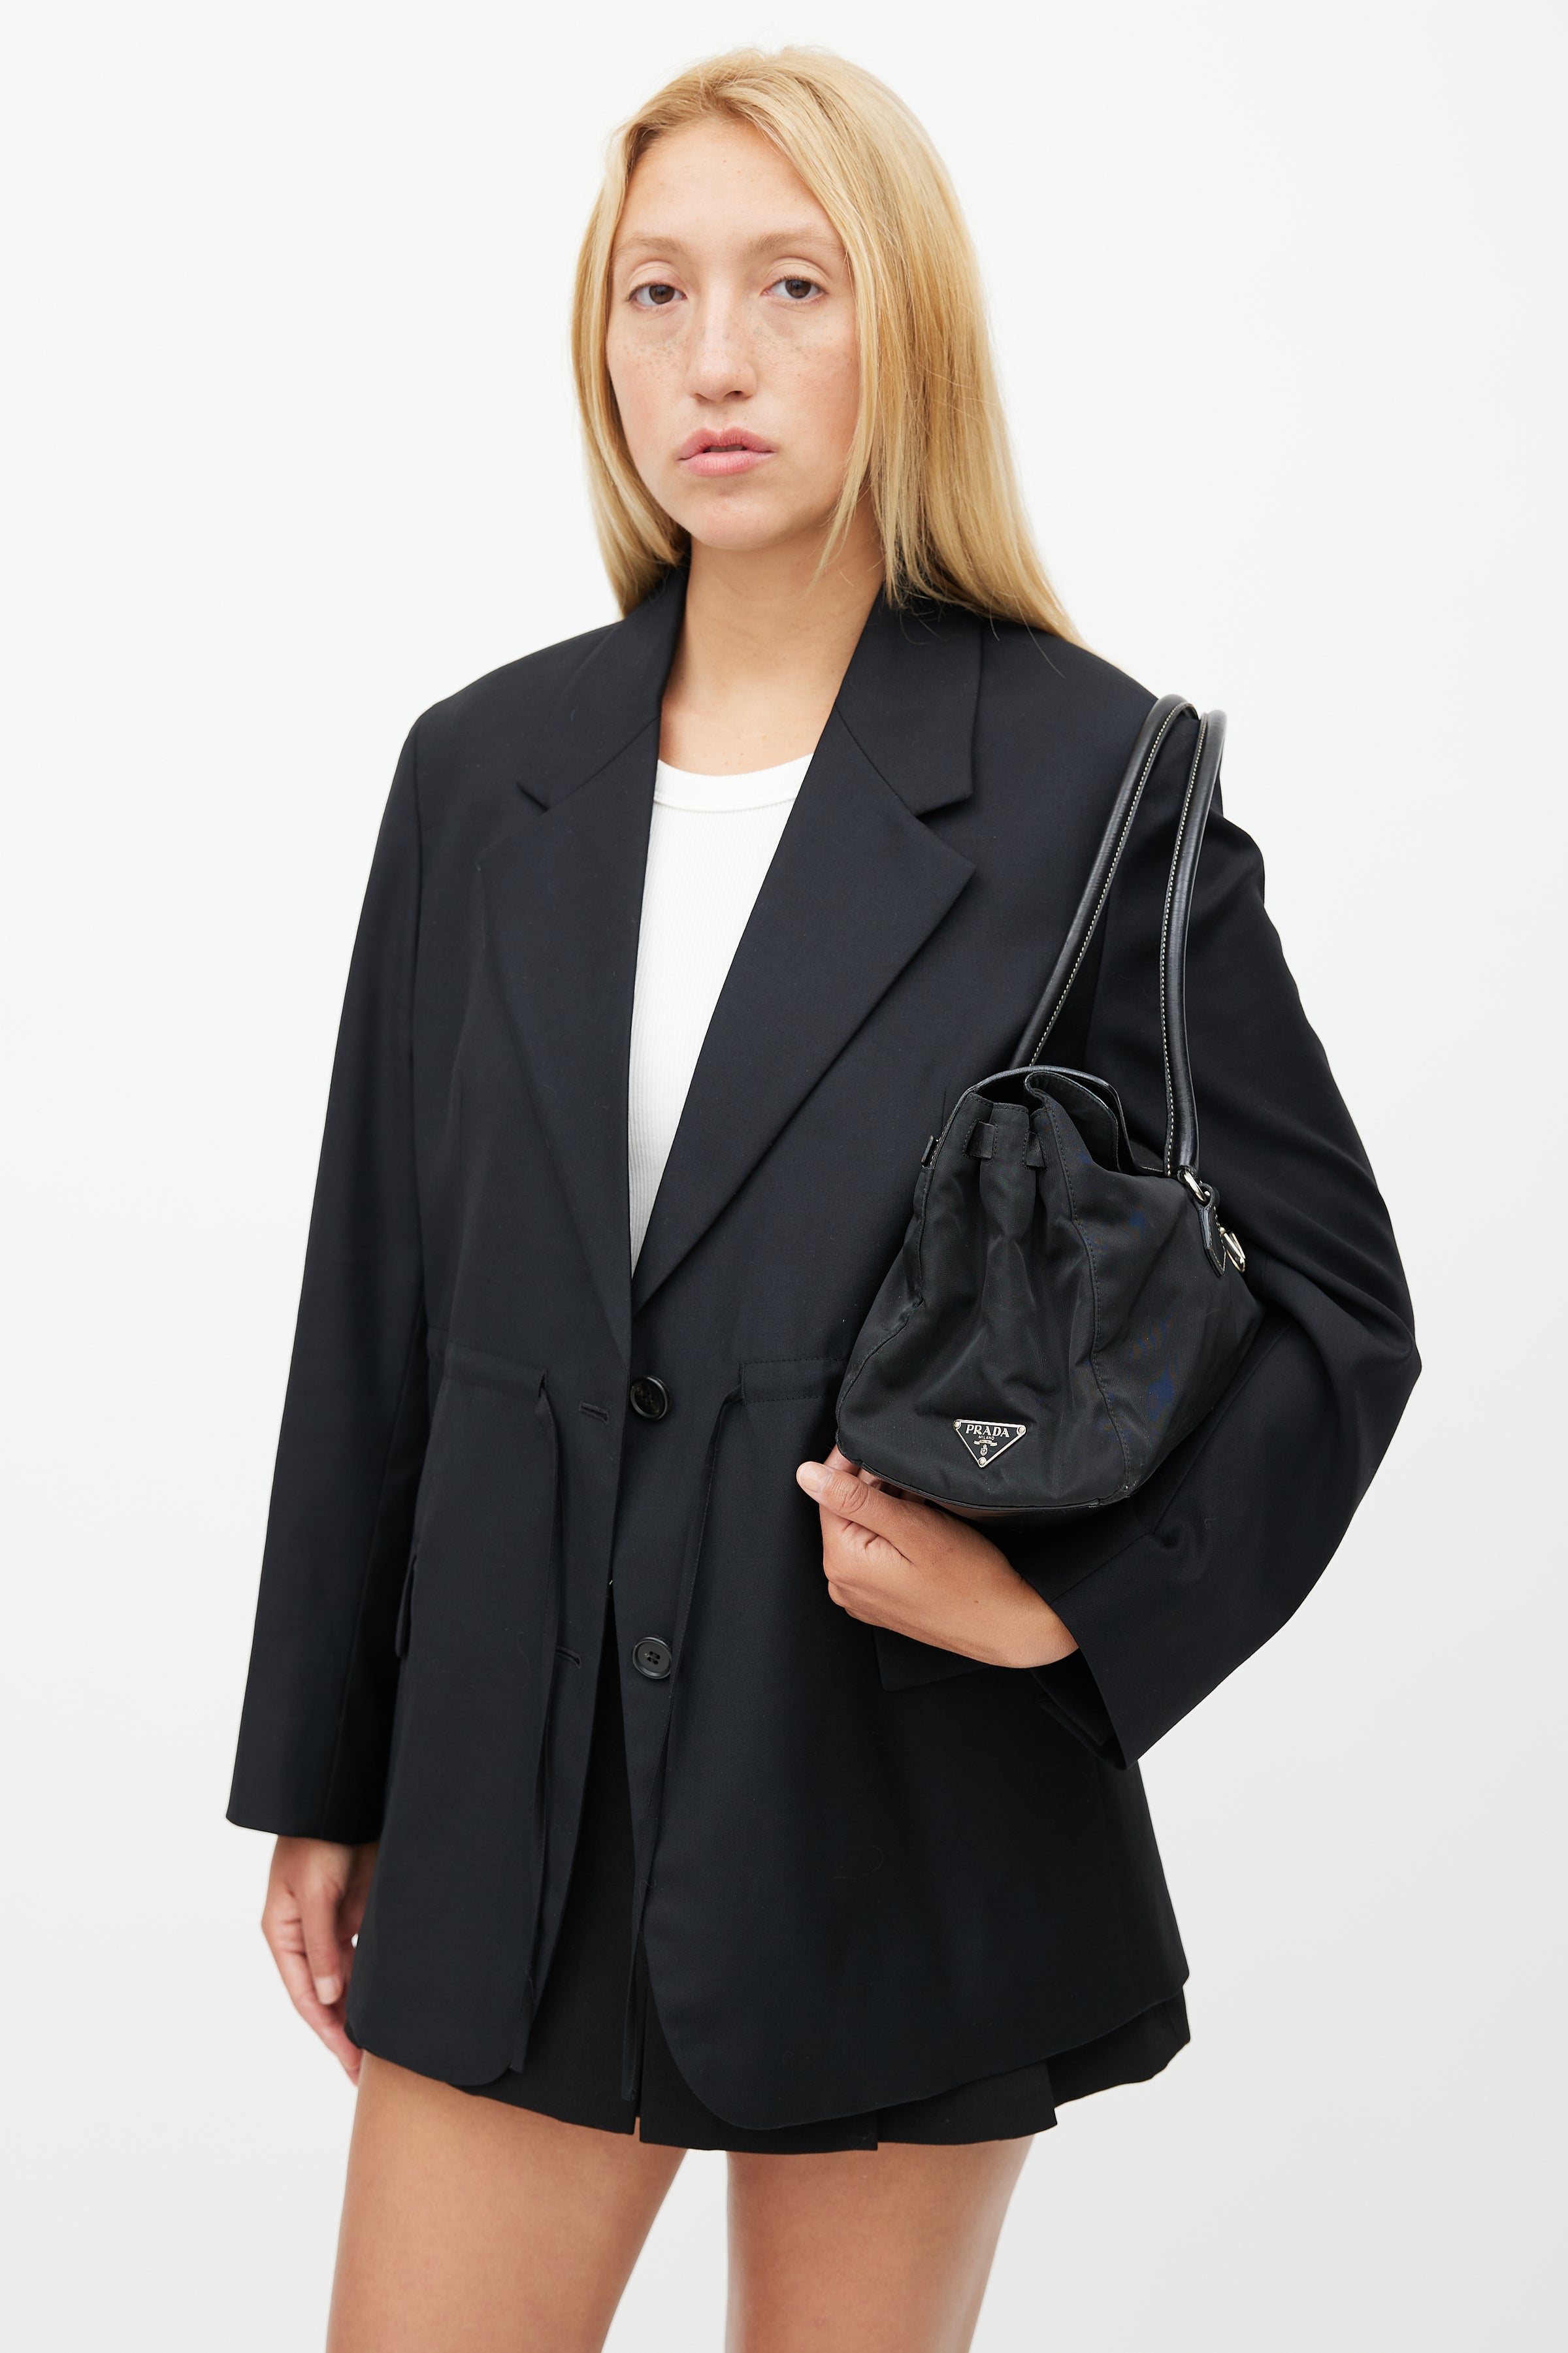 Prada // Black Saffiano Small Galleria Bag – VSP Consignment